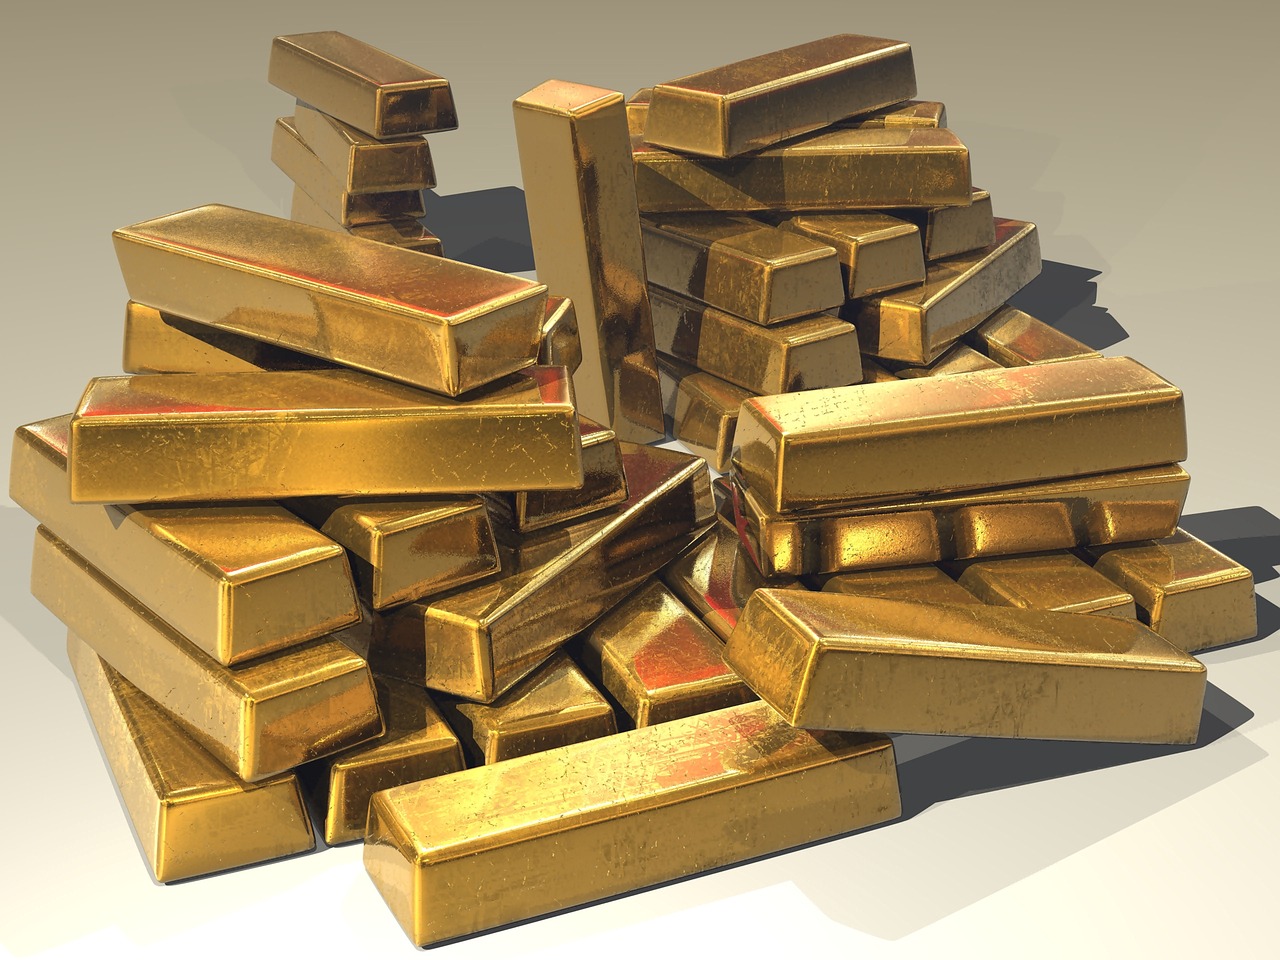 Agentes da Polícia Federal são presos por contrabando de ouro em voos